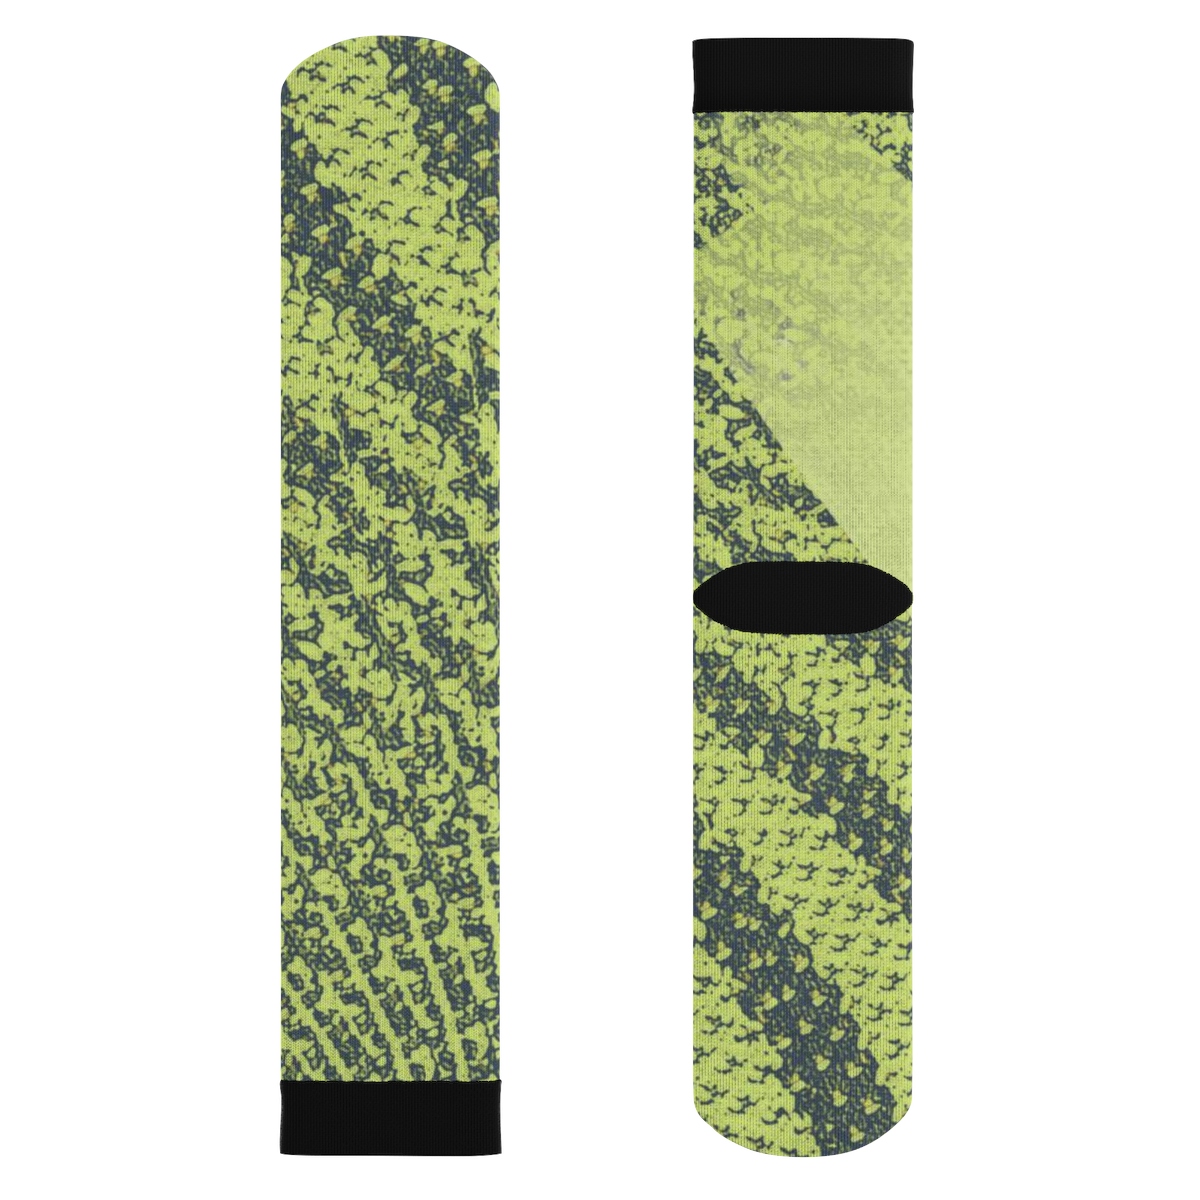 Yeezy Boost 350 V2 Semi Frozen Yellow Sneaker ColorwayMatch Sublimation Socks